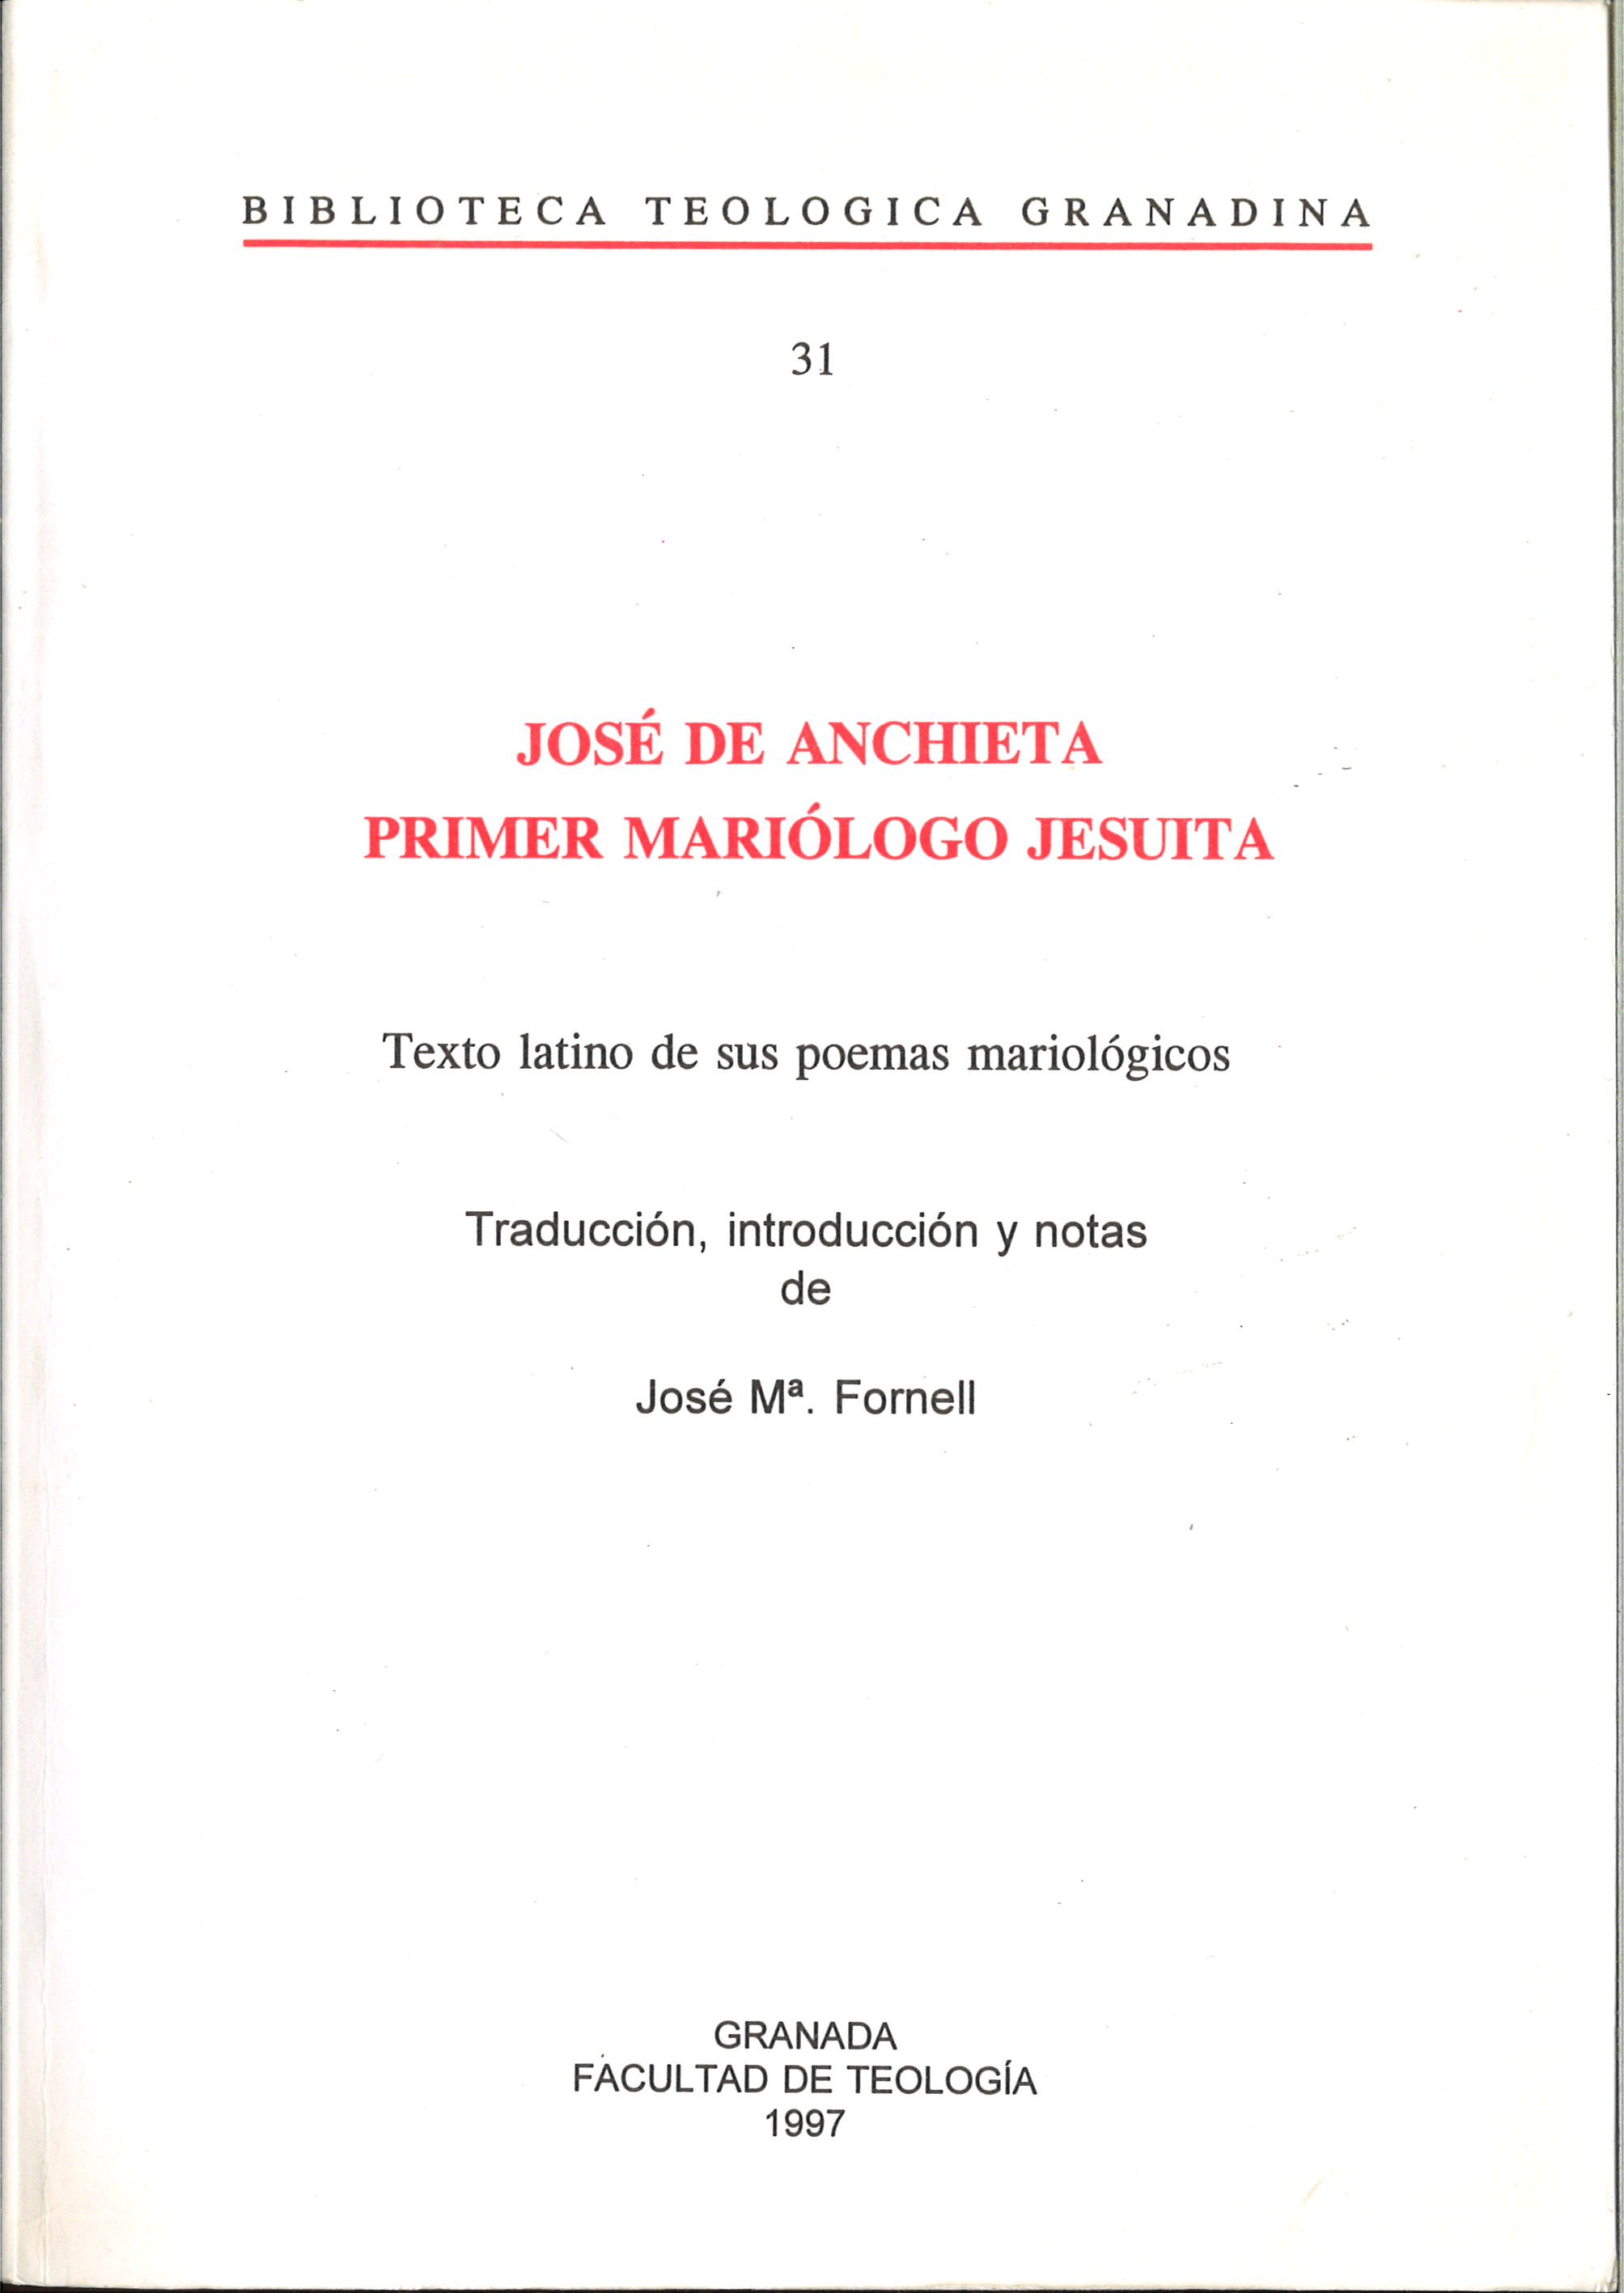 Imagen de portada del libro José de Anchieta, primer mariólogo jesuita